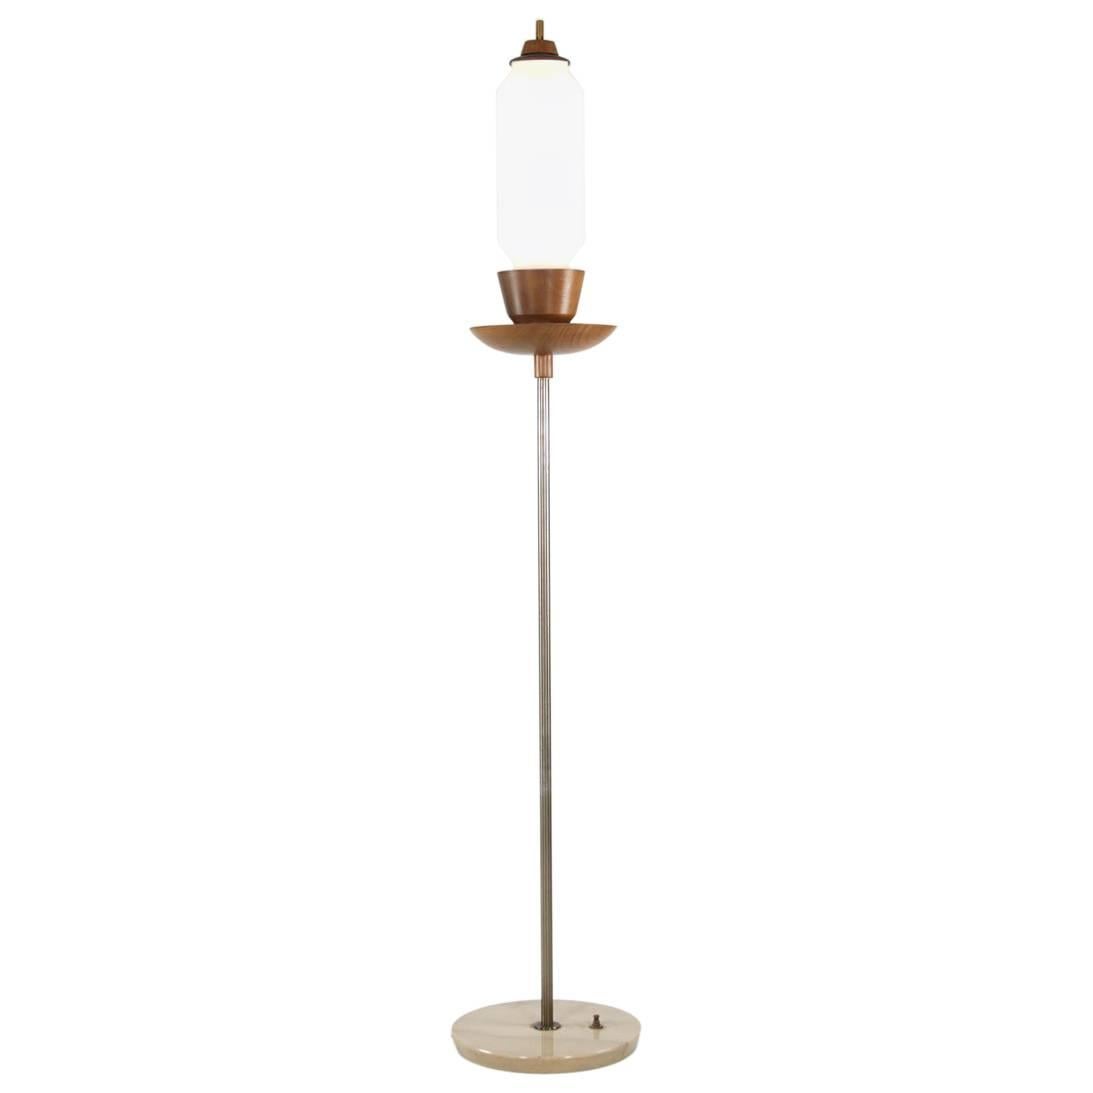 Stehlampe aus italienischem Marmor, Teakholz und Messing, 1960er Jahre